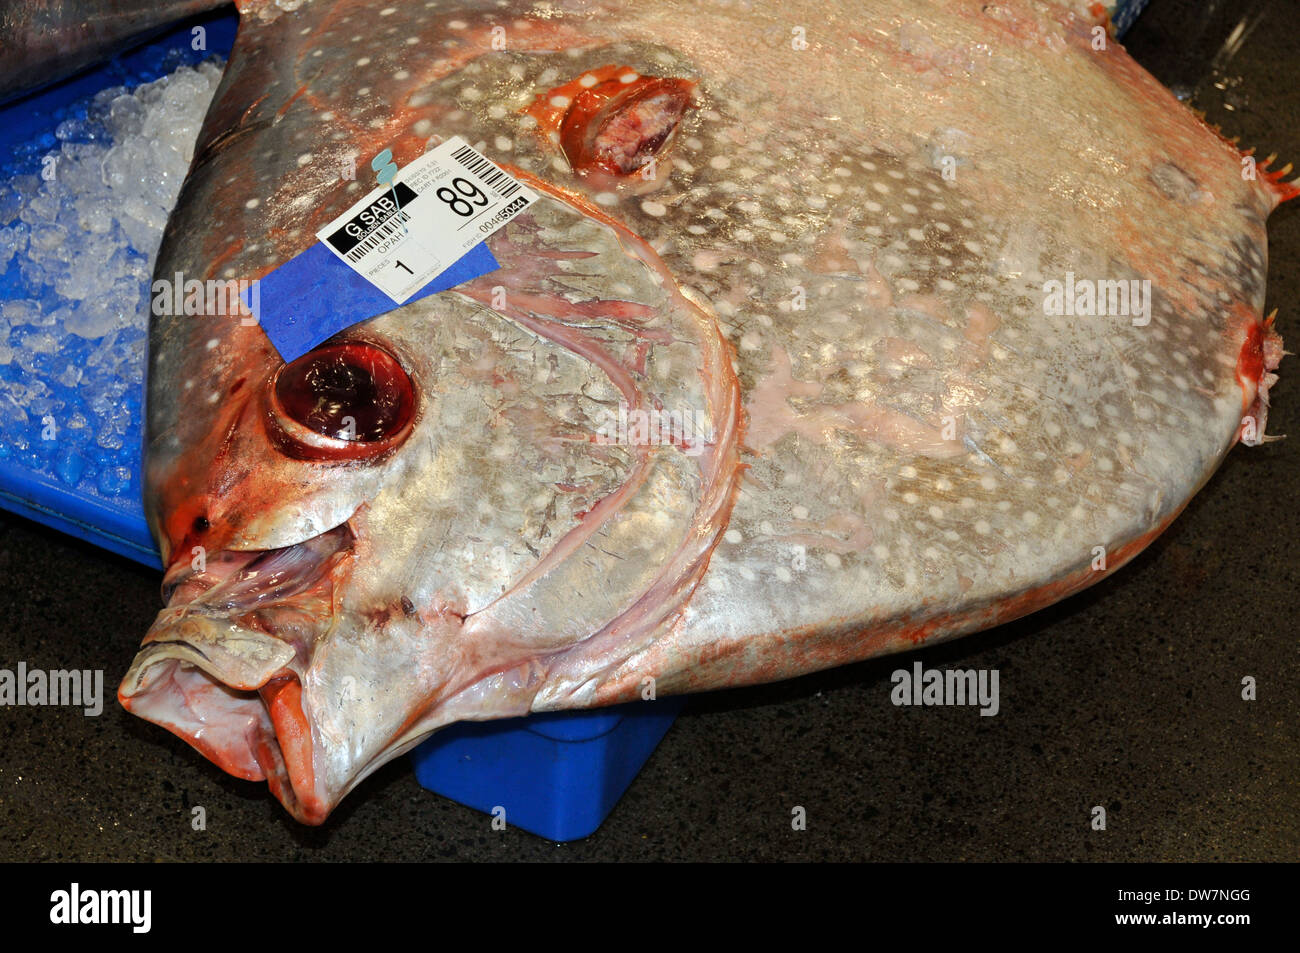 Toten Moonfish, Sonnenbarsch oder Opah, Lampris Regius, warten auf dem Eis zur Versteigerung auf dem Fischmarkt von Honolulu, Oahu, Hawaii, USA Stockfoto